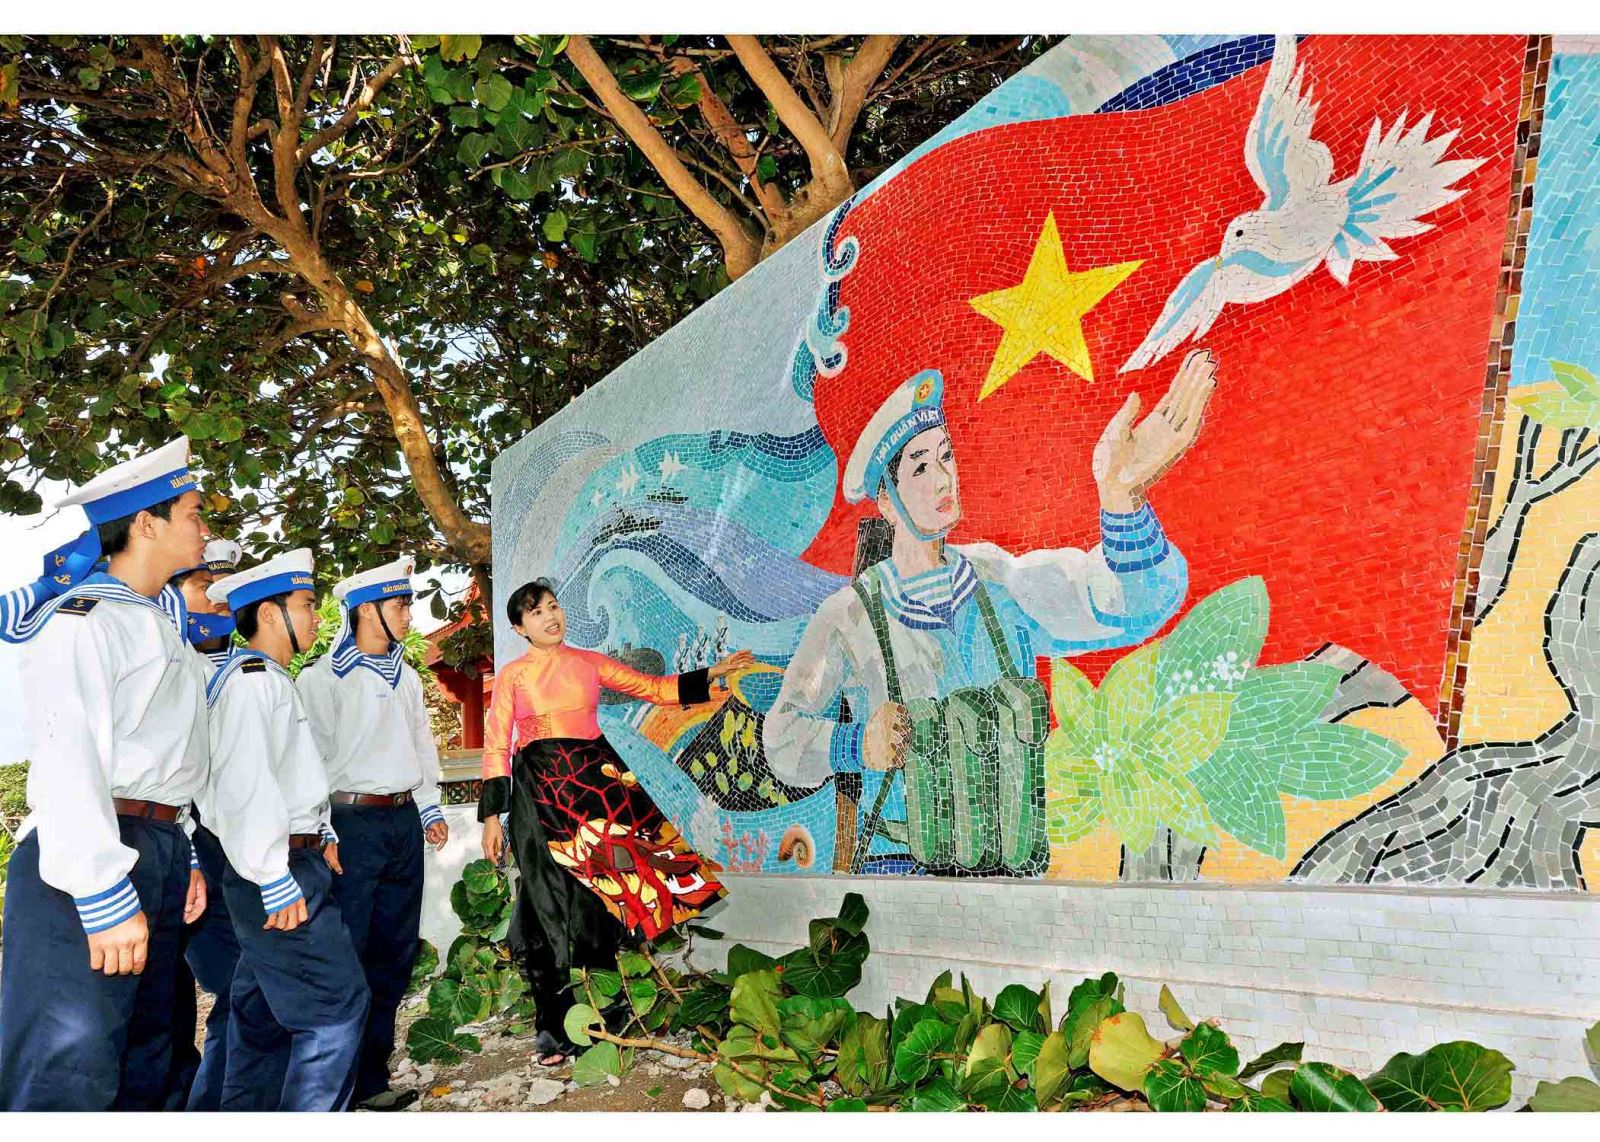 Hình ảnh họa sĩ Thu Thủy với tranh gốm cổ động ở Trường Sa trong phim